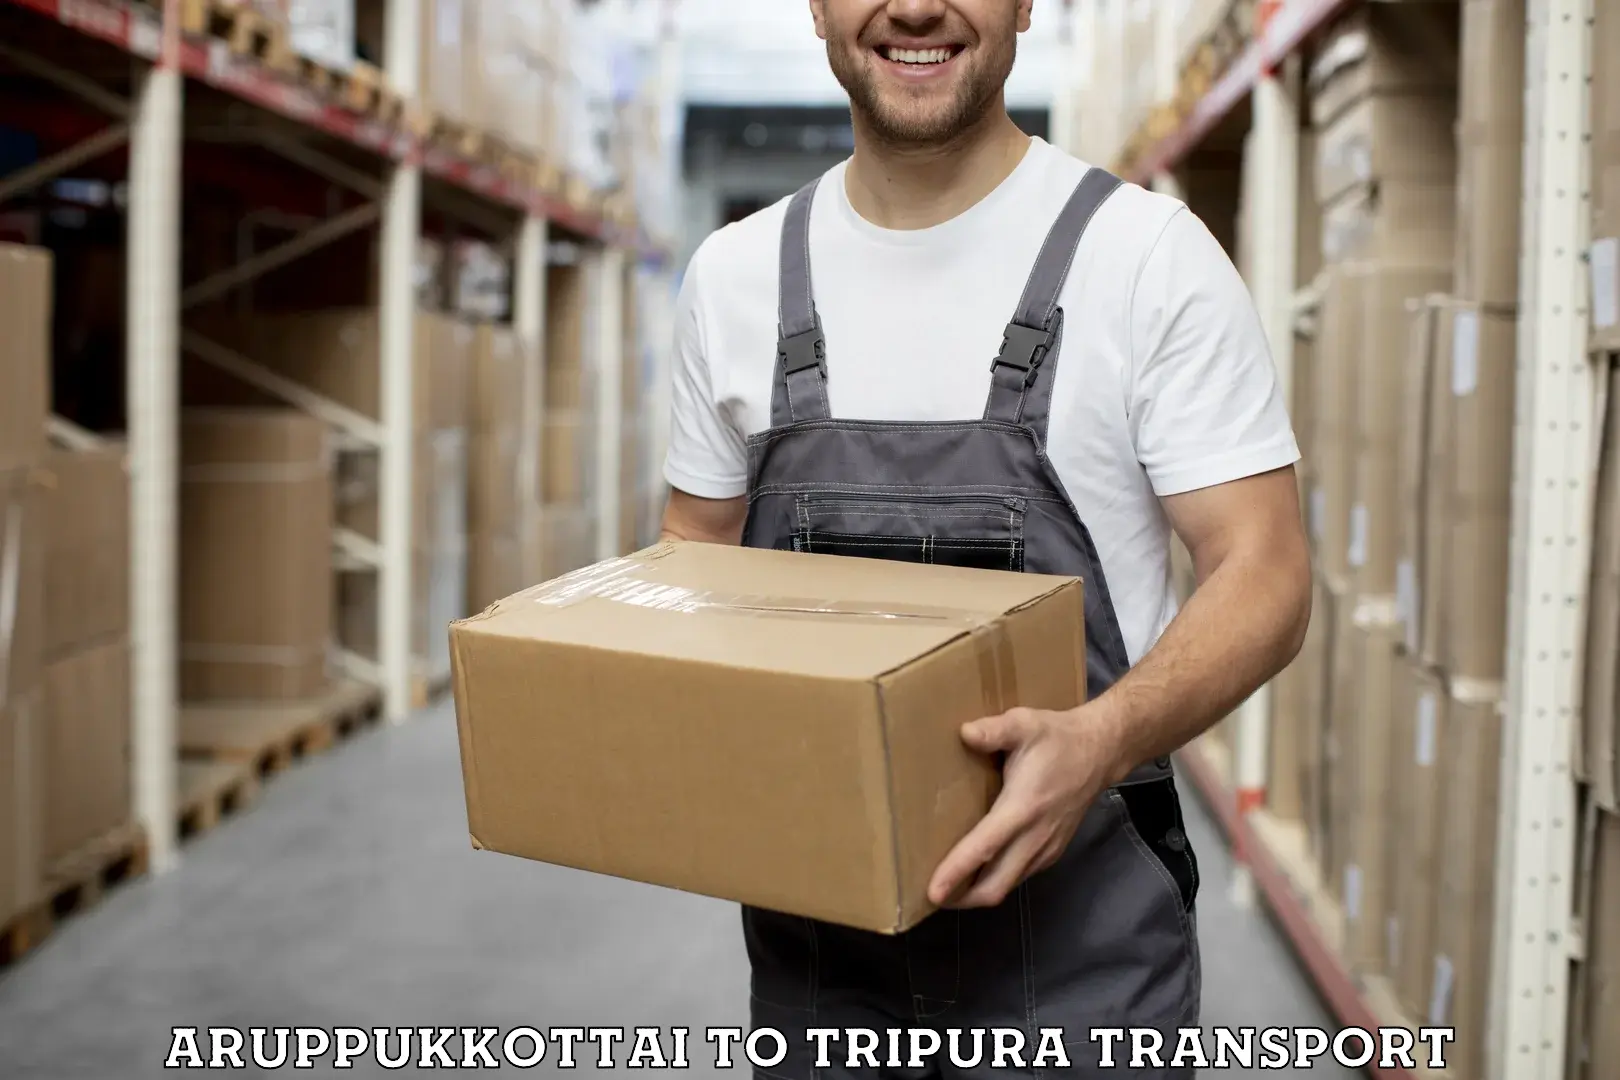 Online transport service Aruppukkottai to IIIT Agartala